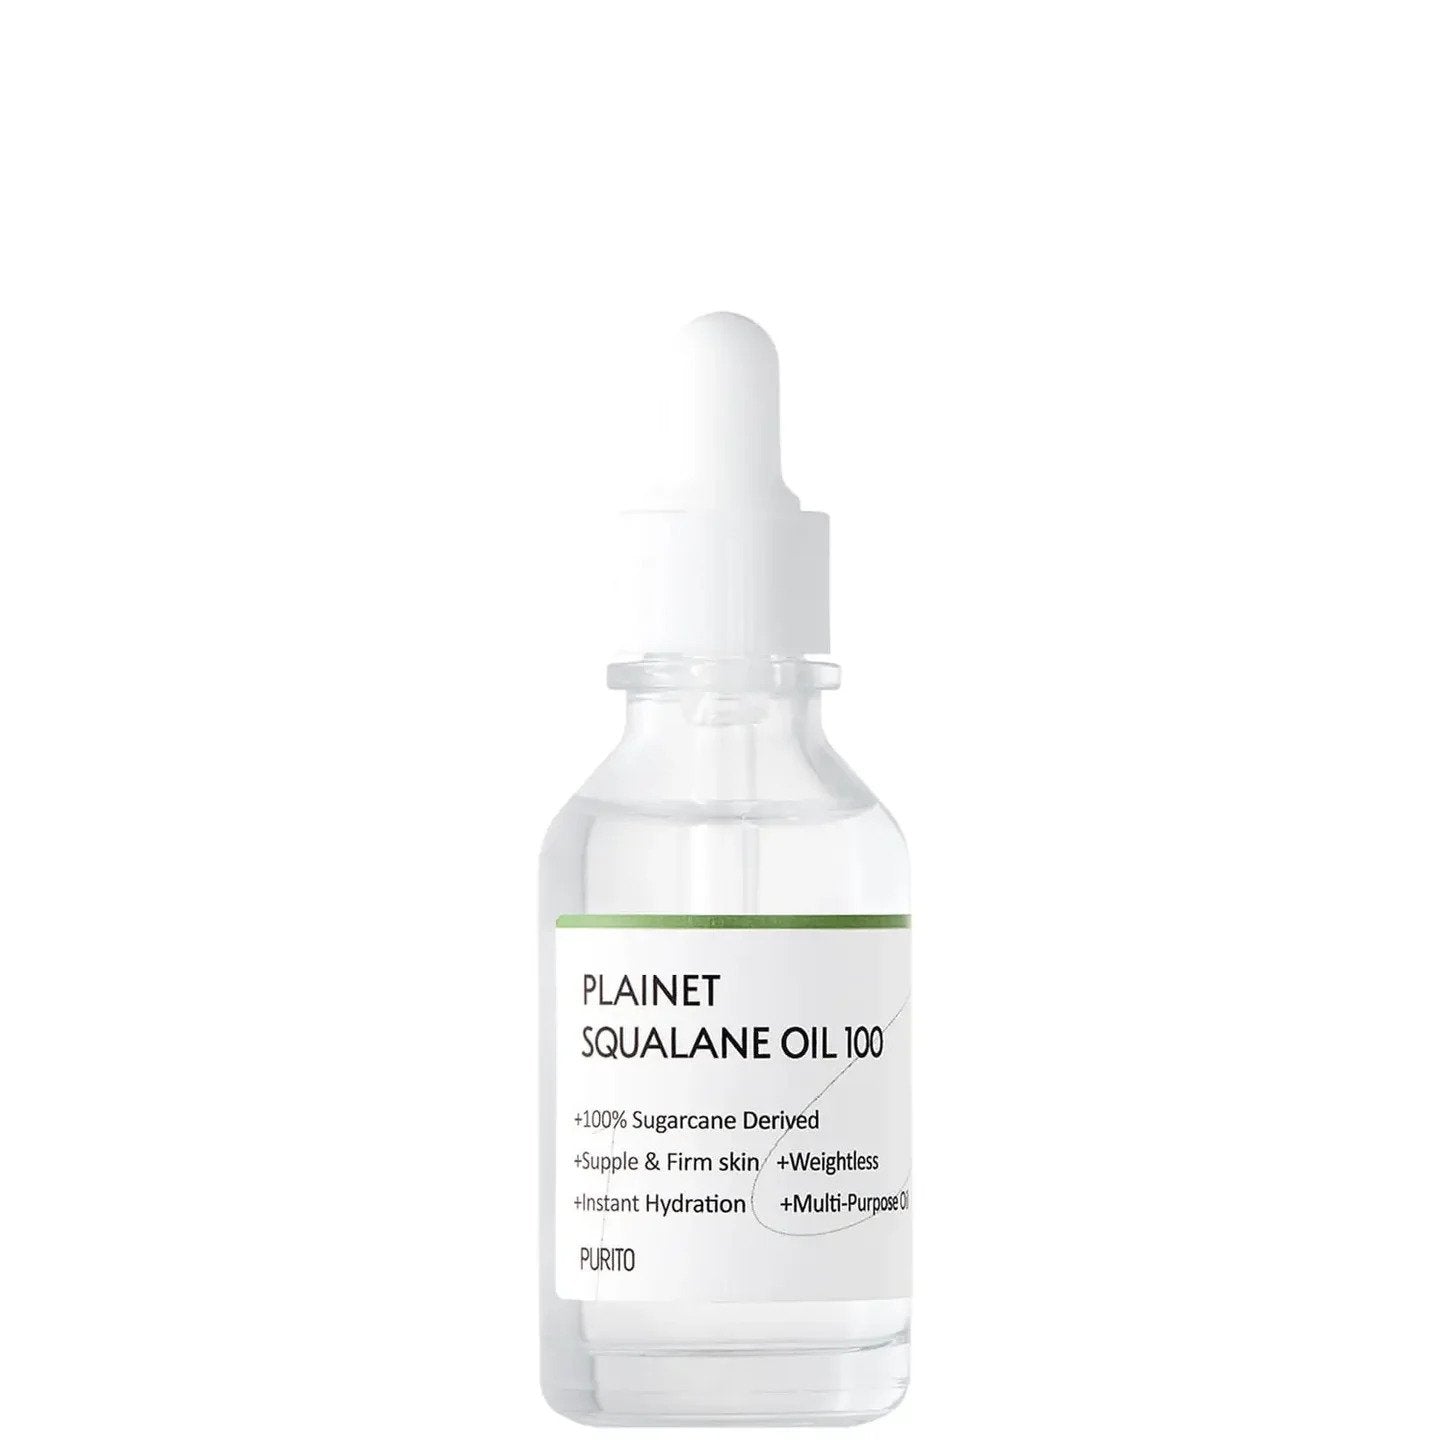 Purito Plainet Squalane Oil 30ml UK Korean K-Beauty Skincare